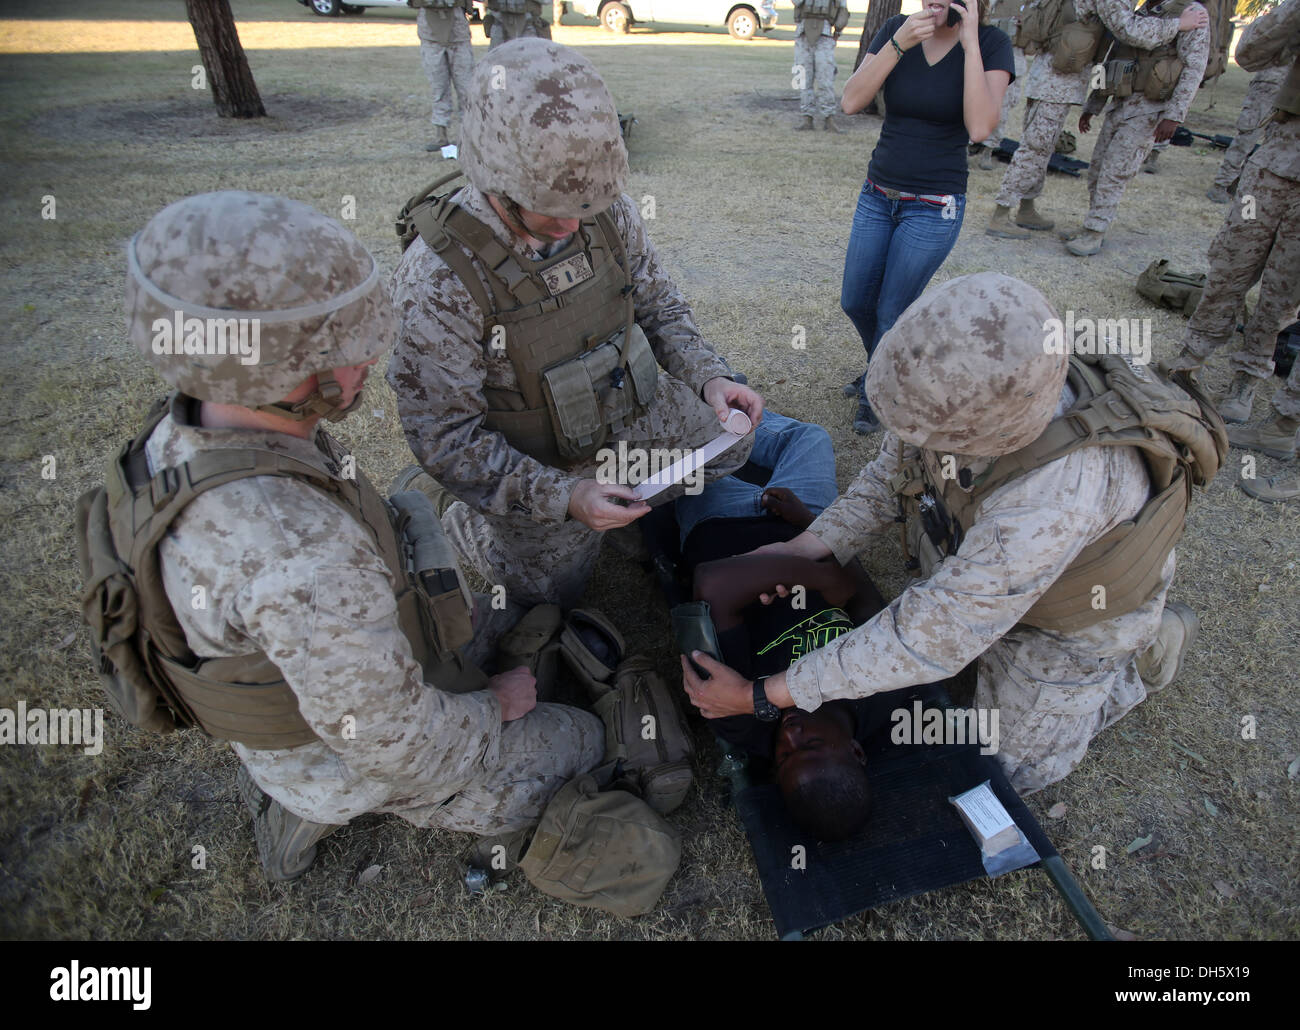 MARINE CORPS AIR STATION YUMA, Arizona - Corpsmen avec 1er Bataillon, 7e Régiment de Marines, de traiter une blessure simulée du joueur Banque D'Images